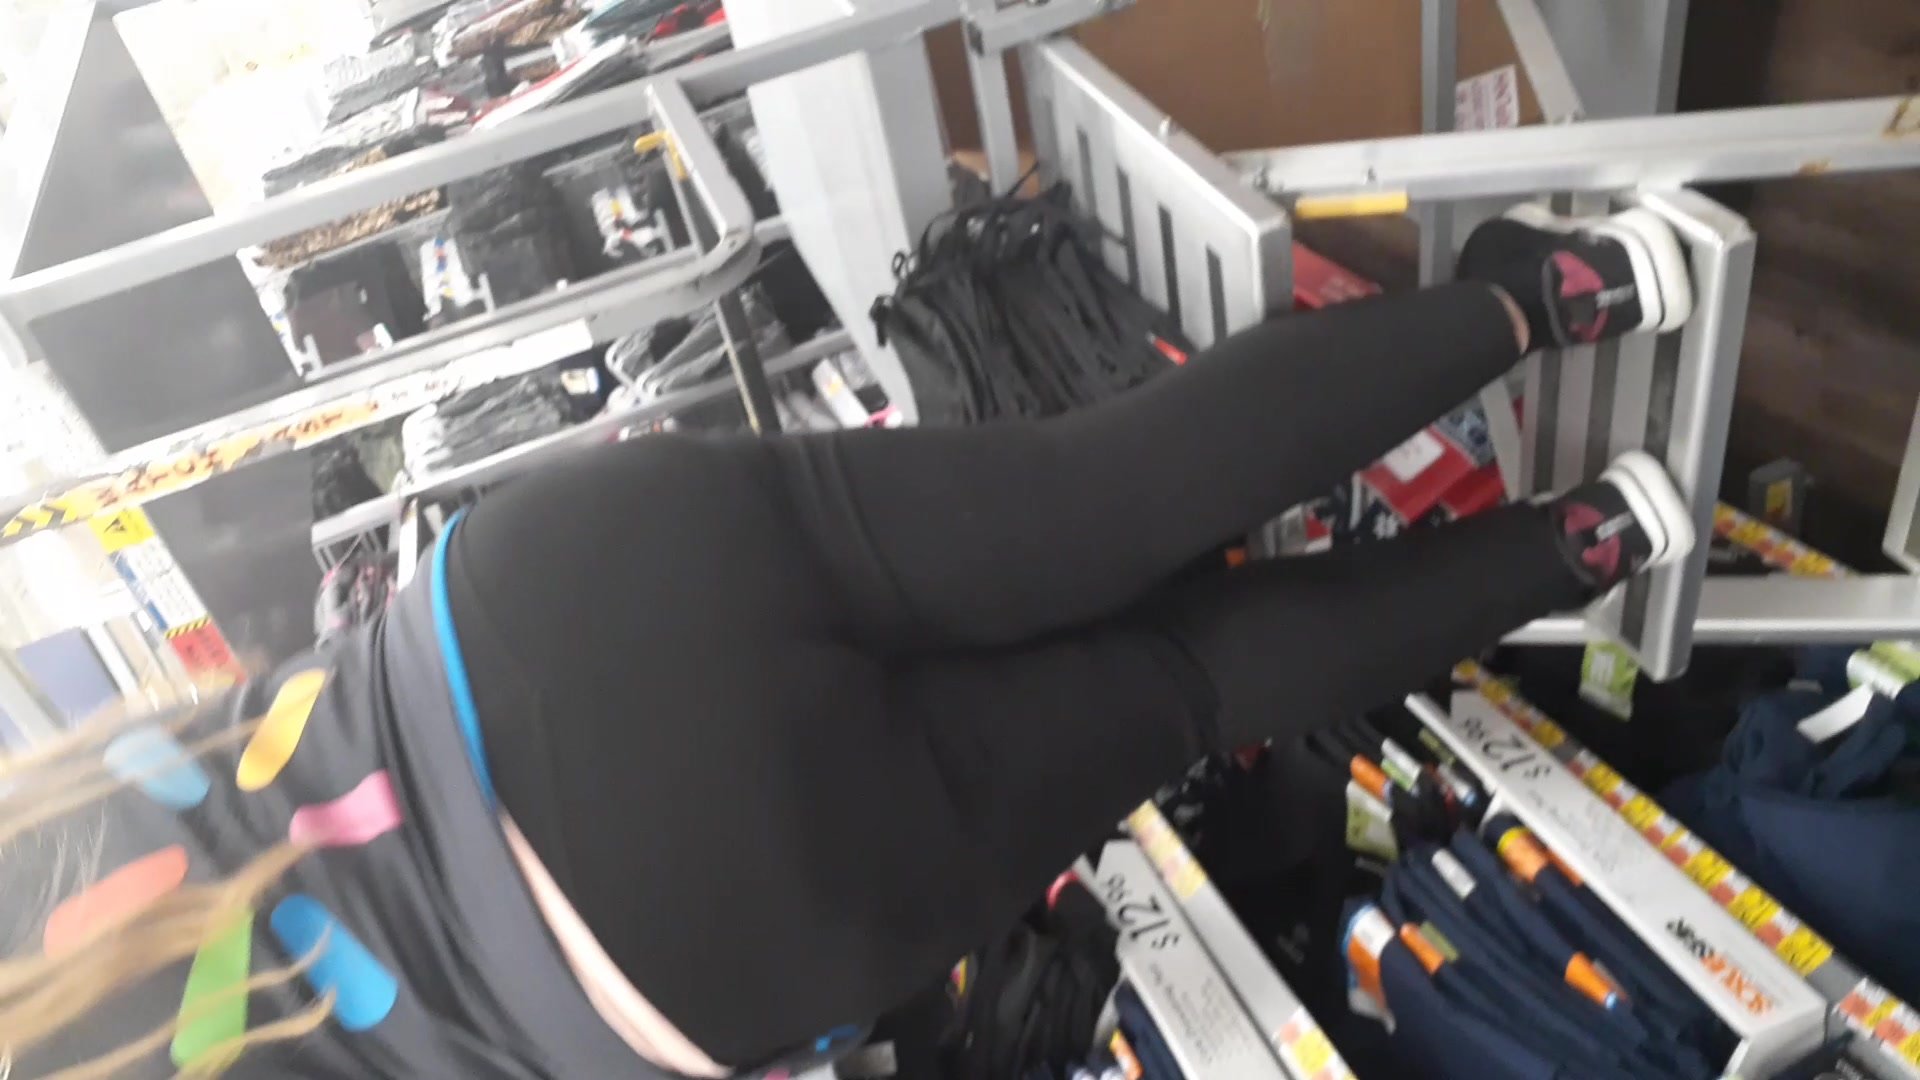 Walmart employee bend over